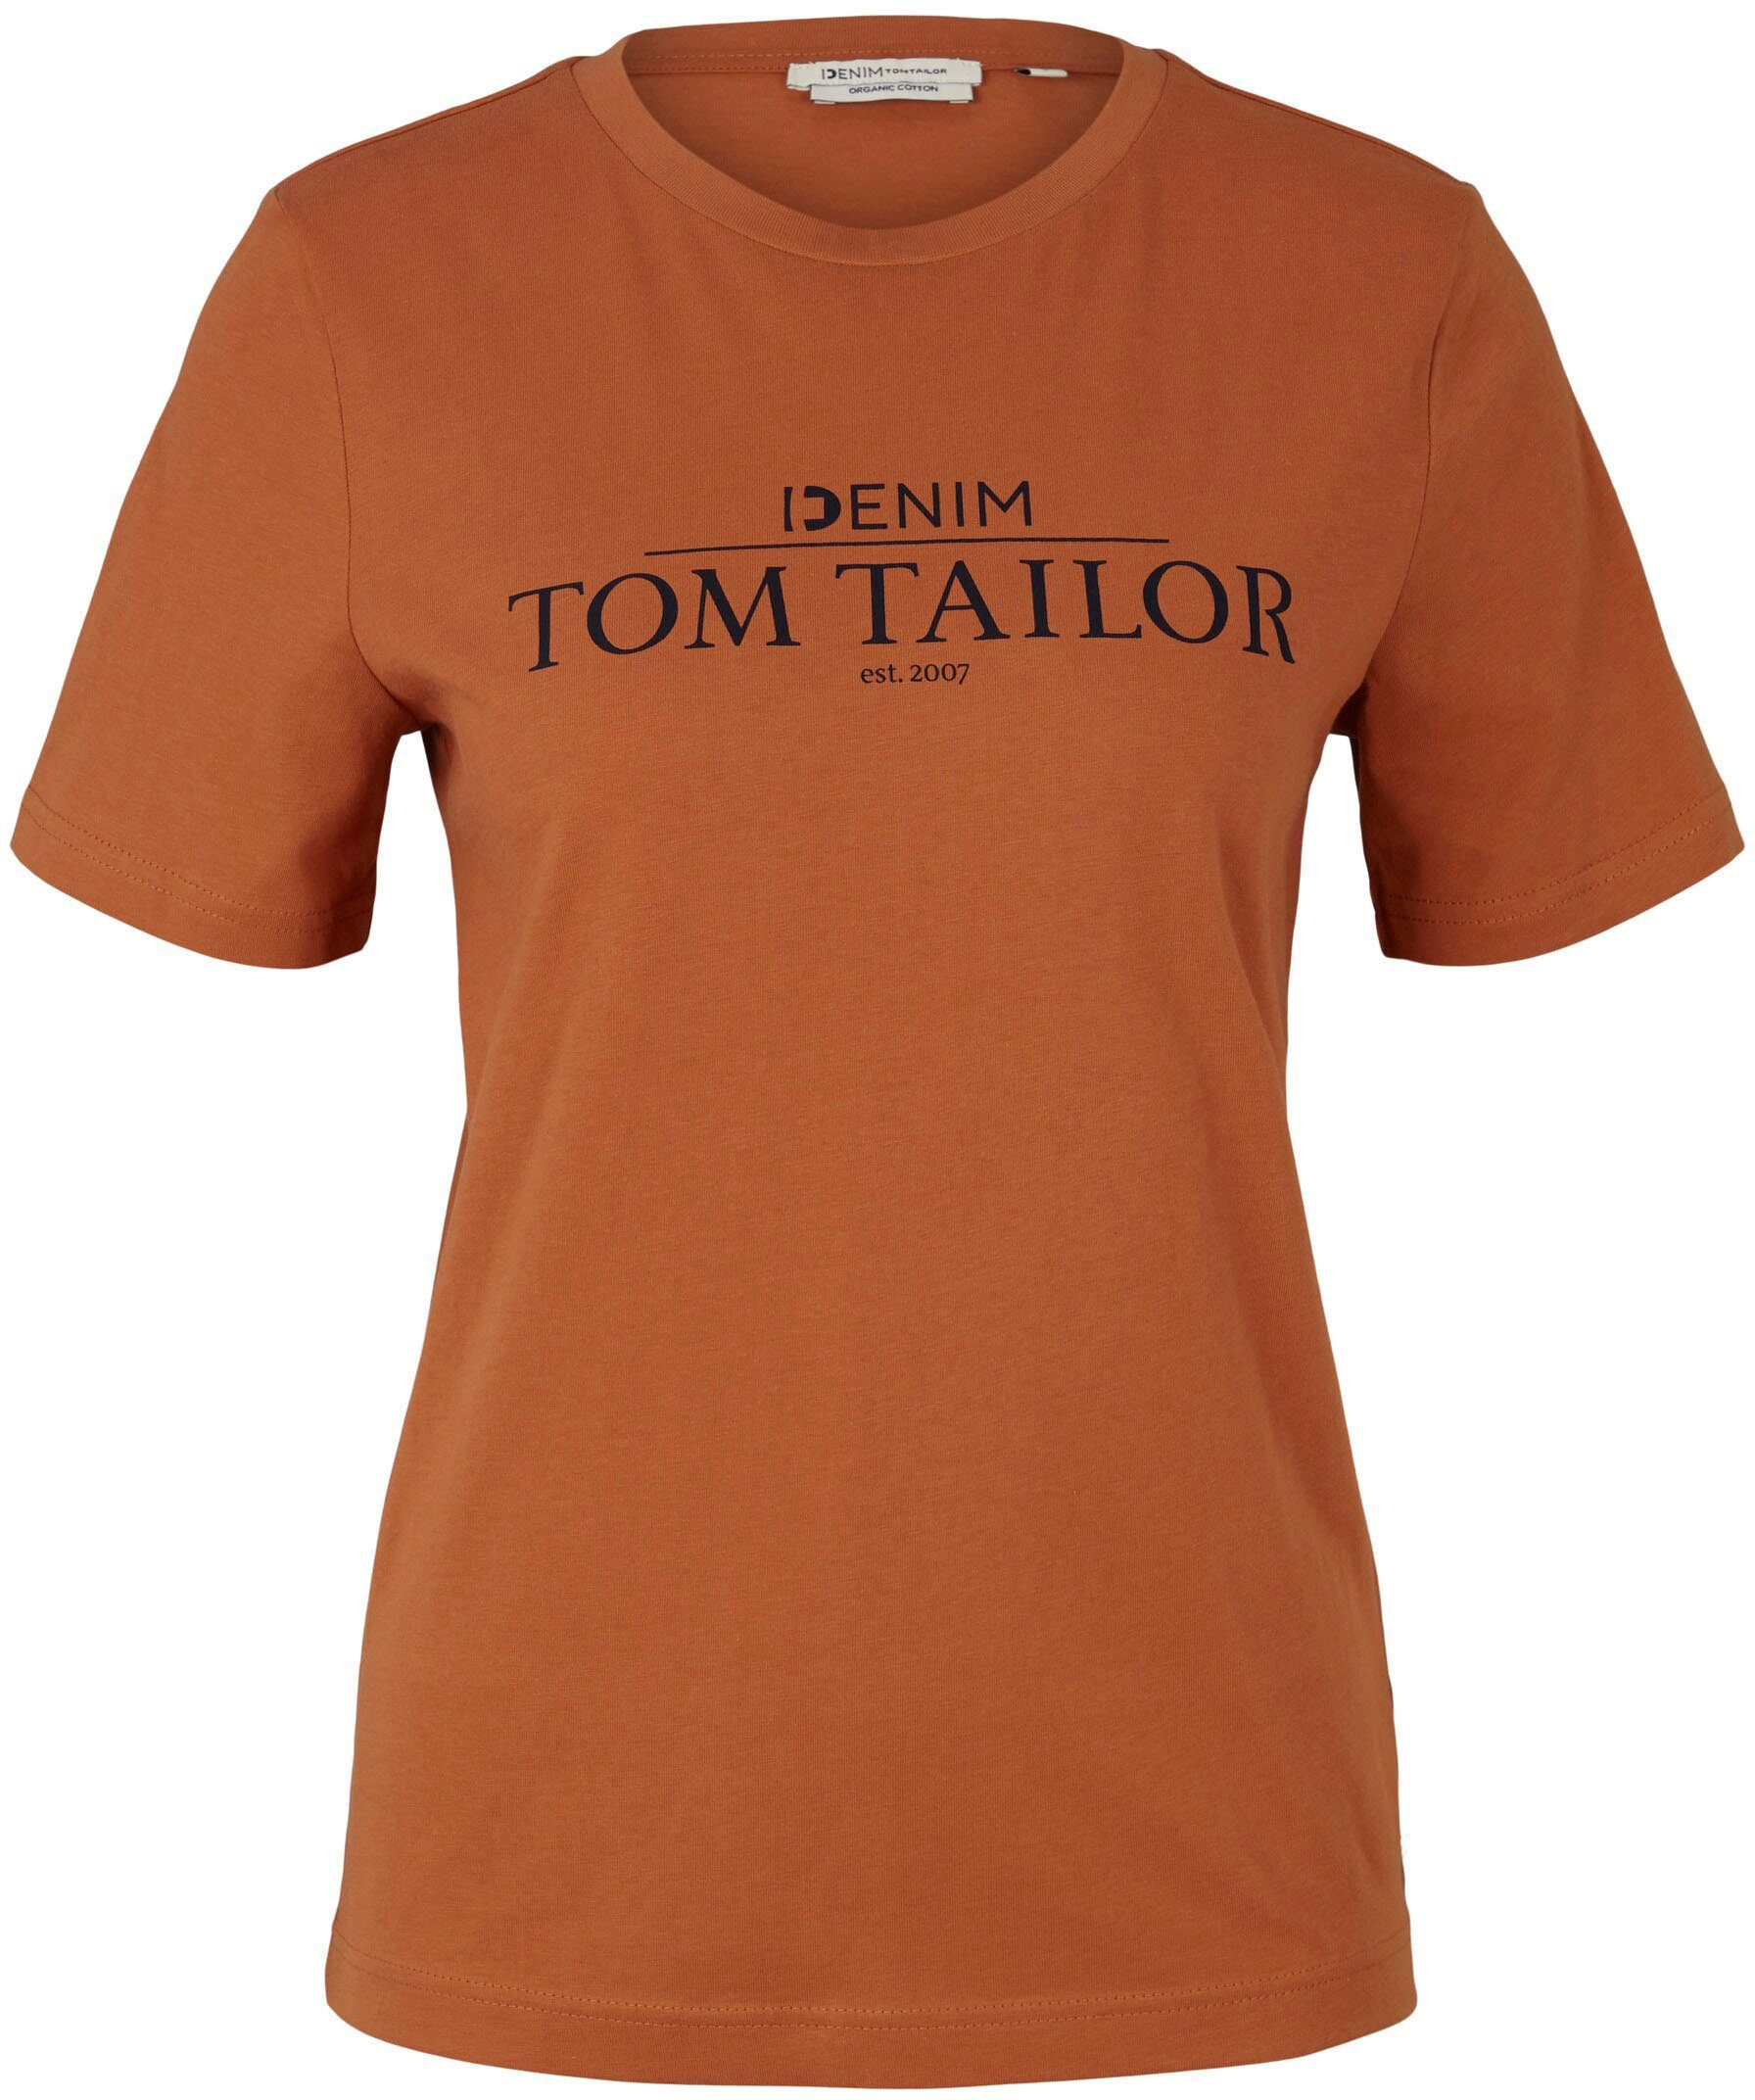 auf Print der Denim TOM amber T-Shirt Logo TAILOR Brust mit